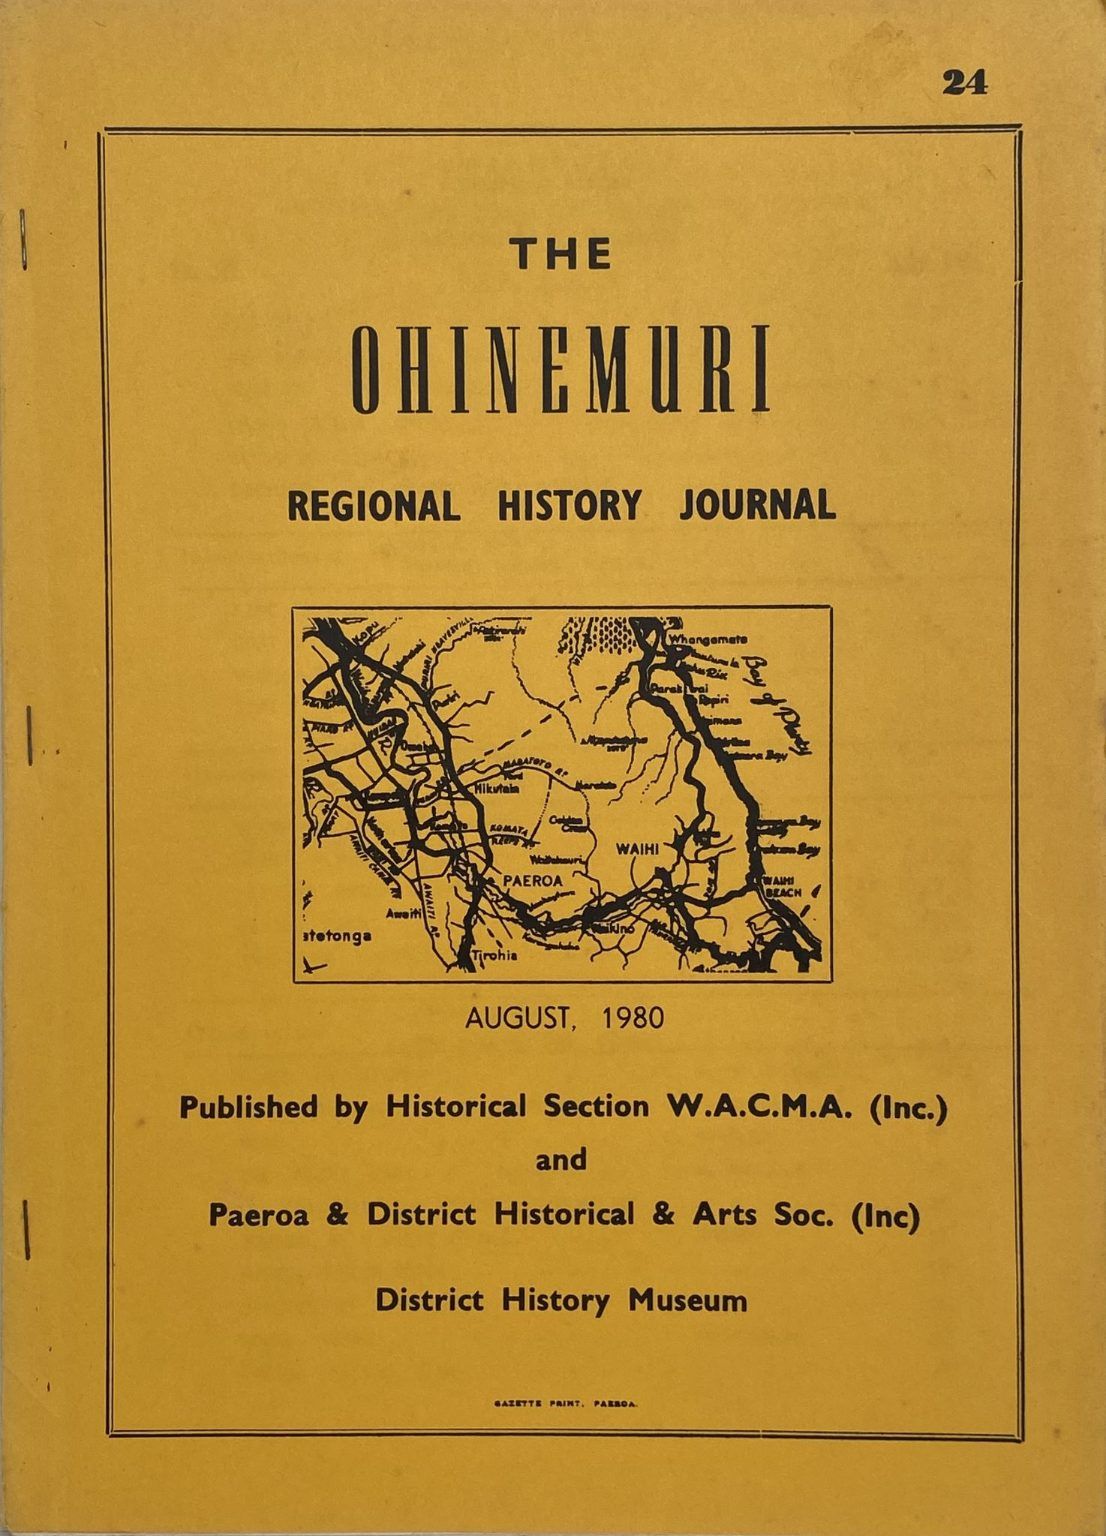 THE OHINEMURI REGIONAL HISTORY JOURNAL: August 1980